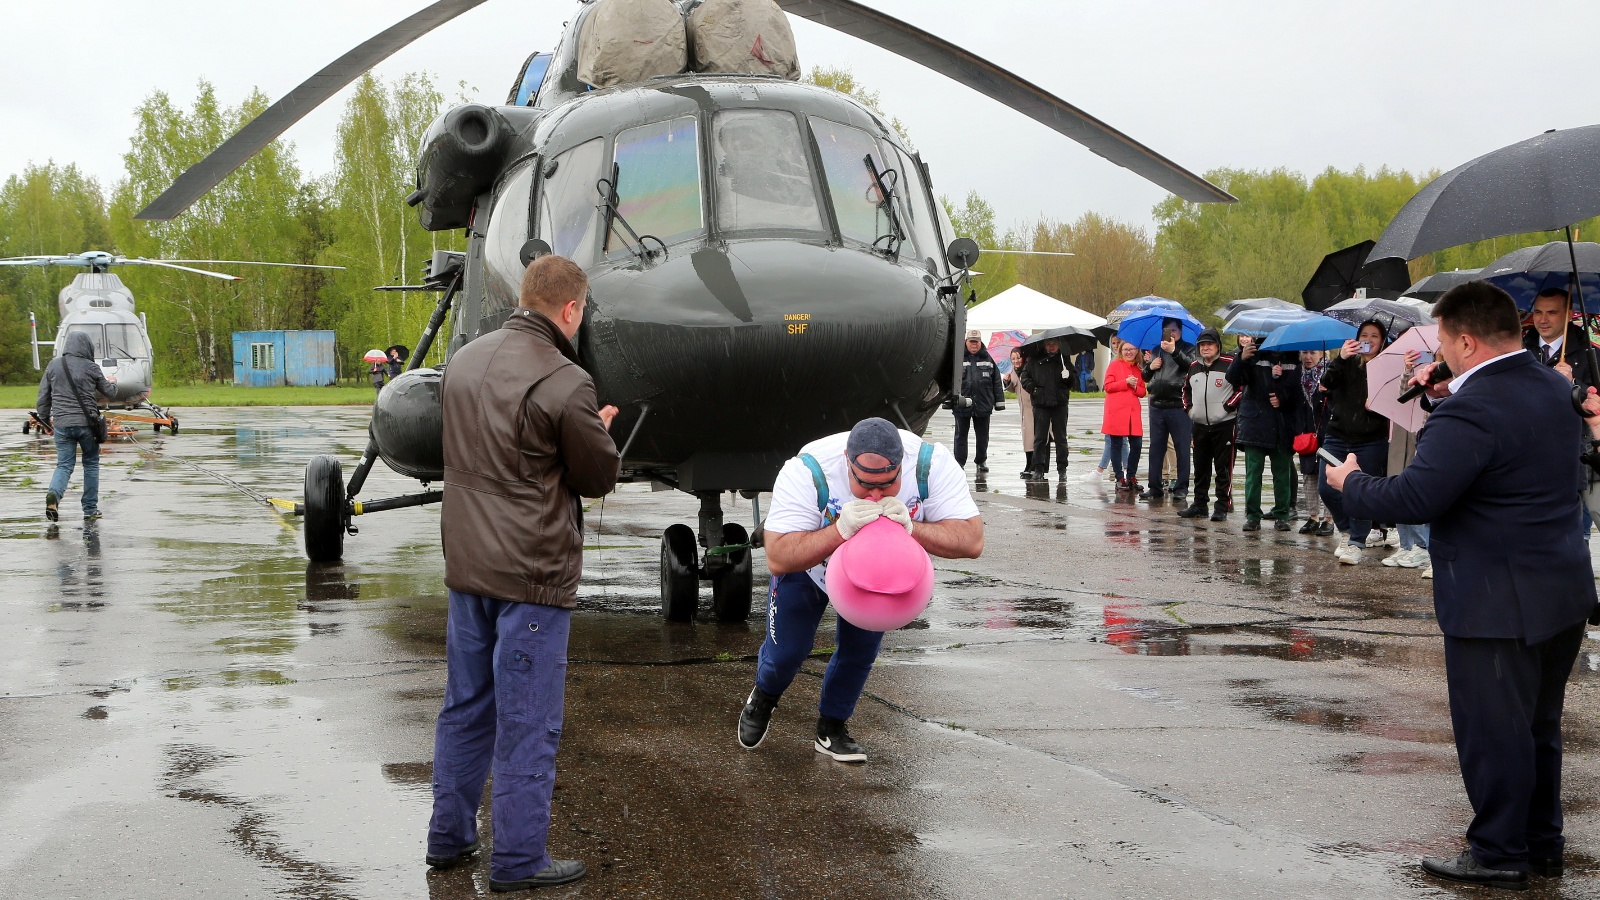 18 19 20 мая. Вертолет Ансат Казанский вертолетный завод. Вертолеты над Люберцами.